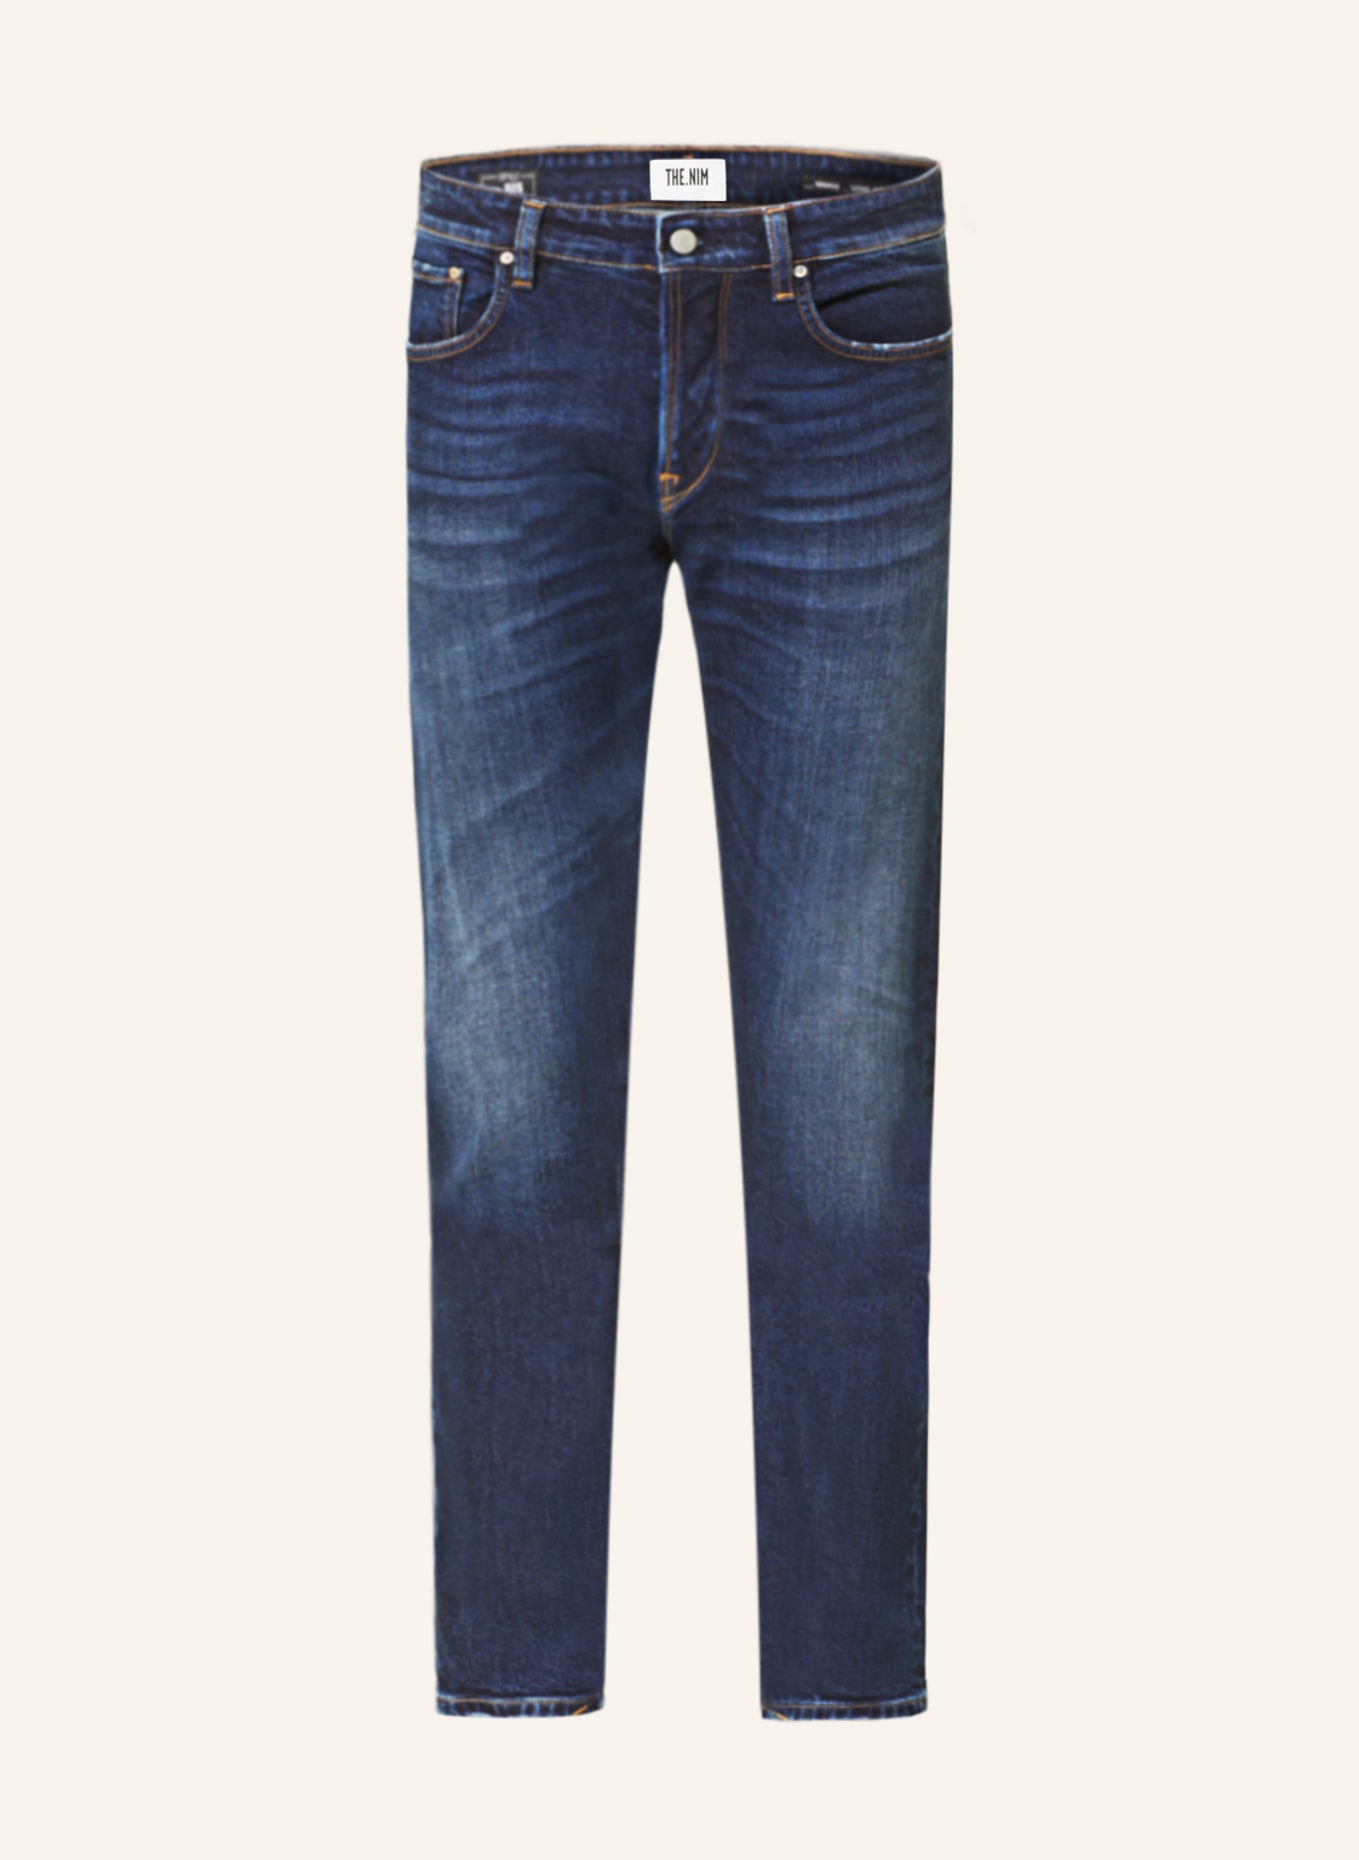 THE.NIM STANDARD Jeans MORRISON Tapered Fit, Farbe: W608 ORGANIC COMFORT DENIM (Bild 1)